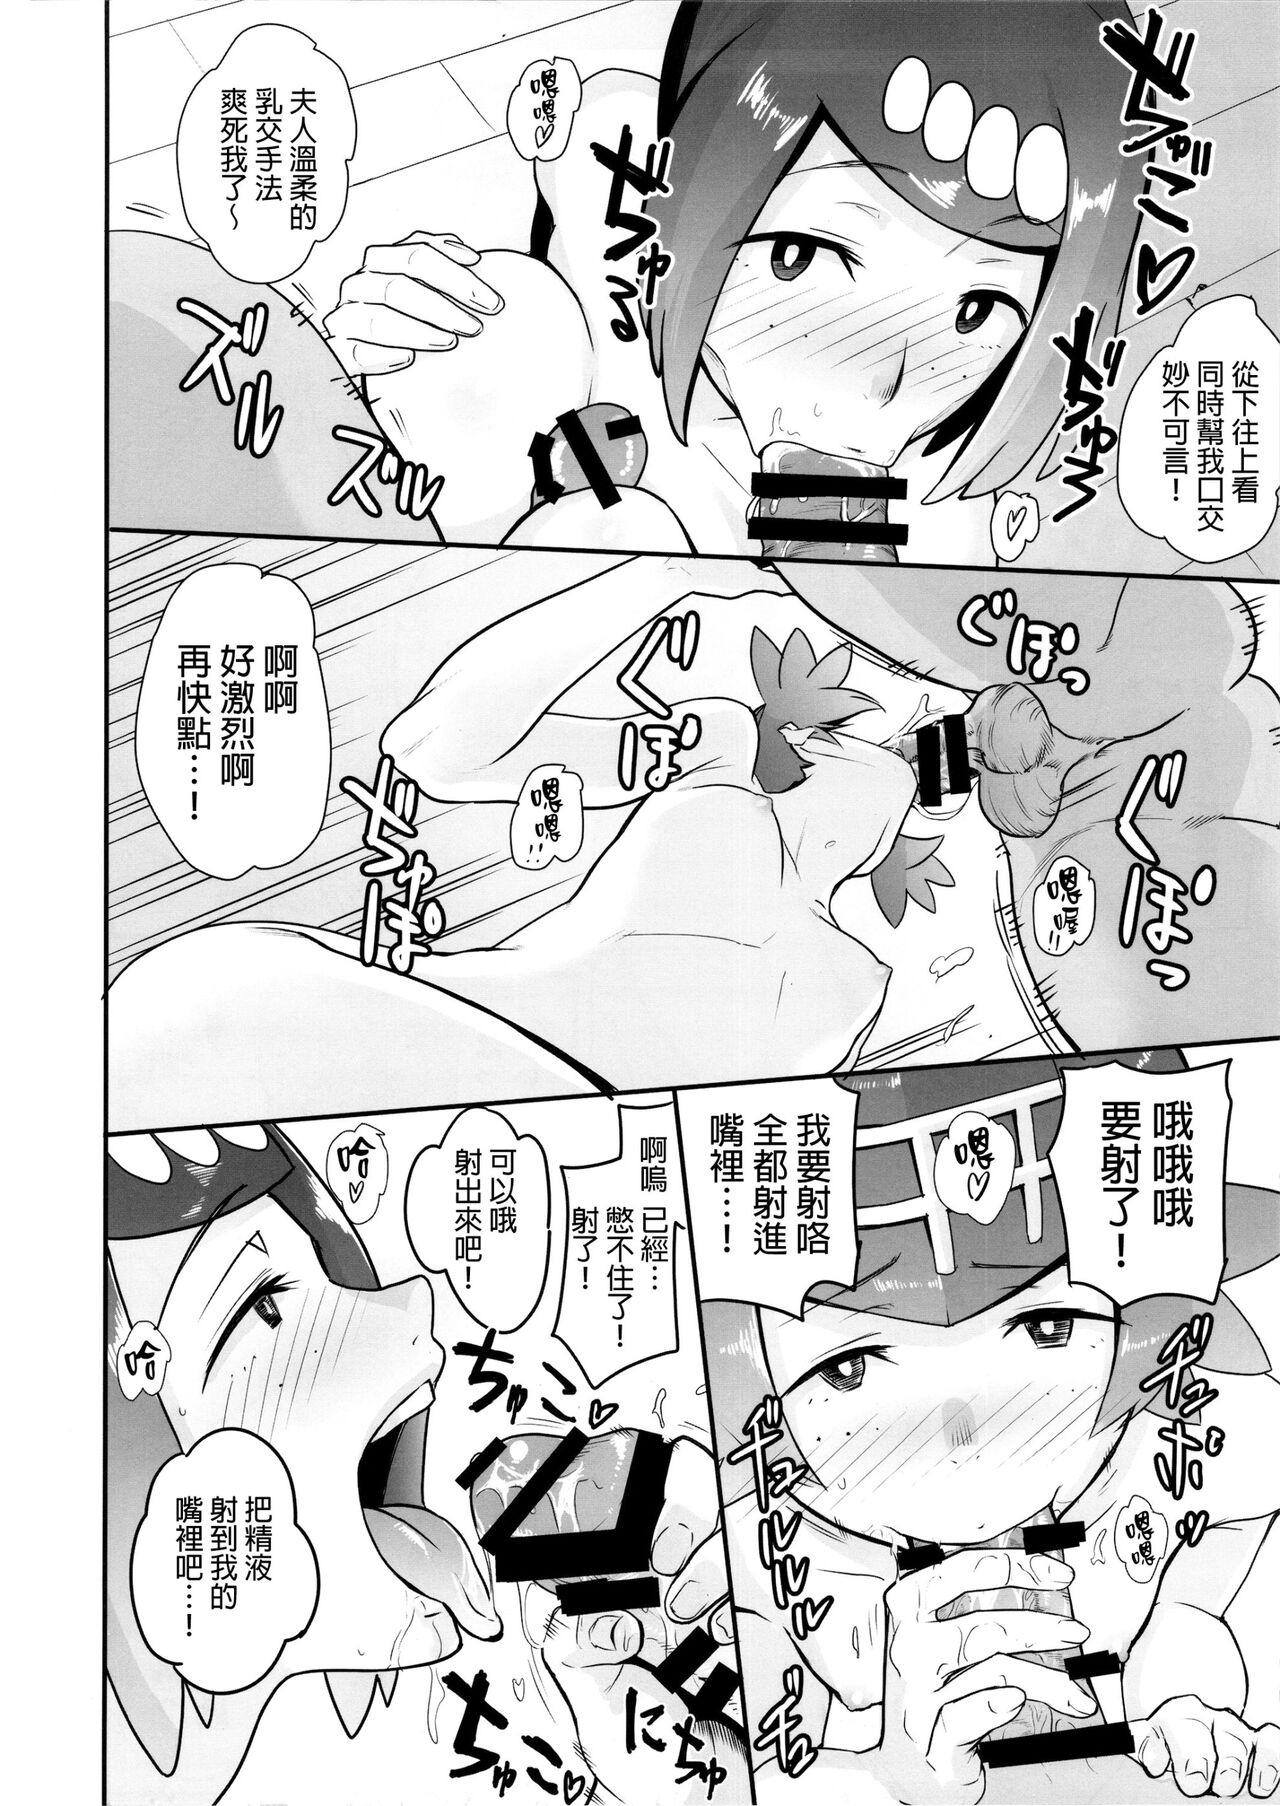 Teenage Alola no Yoru no Sugata 1-6 + Galar no Yoru no Sugata - Pokemon | pocket monsters Chica - Page 11